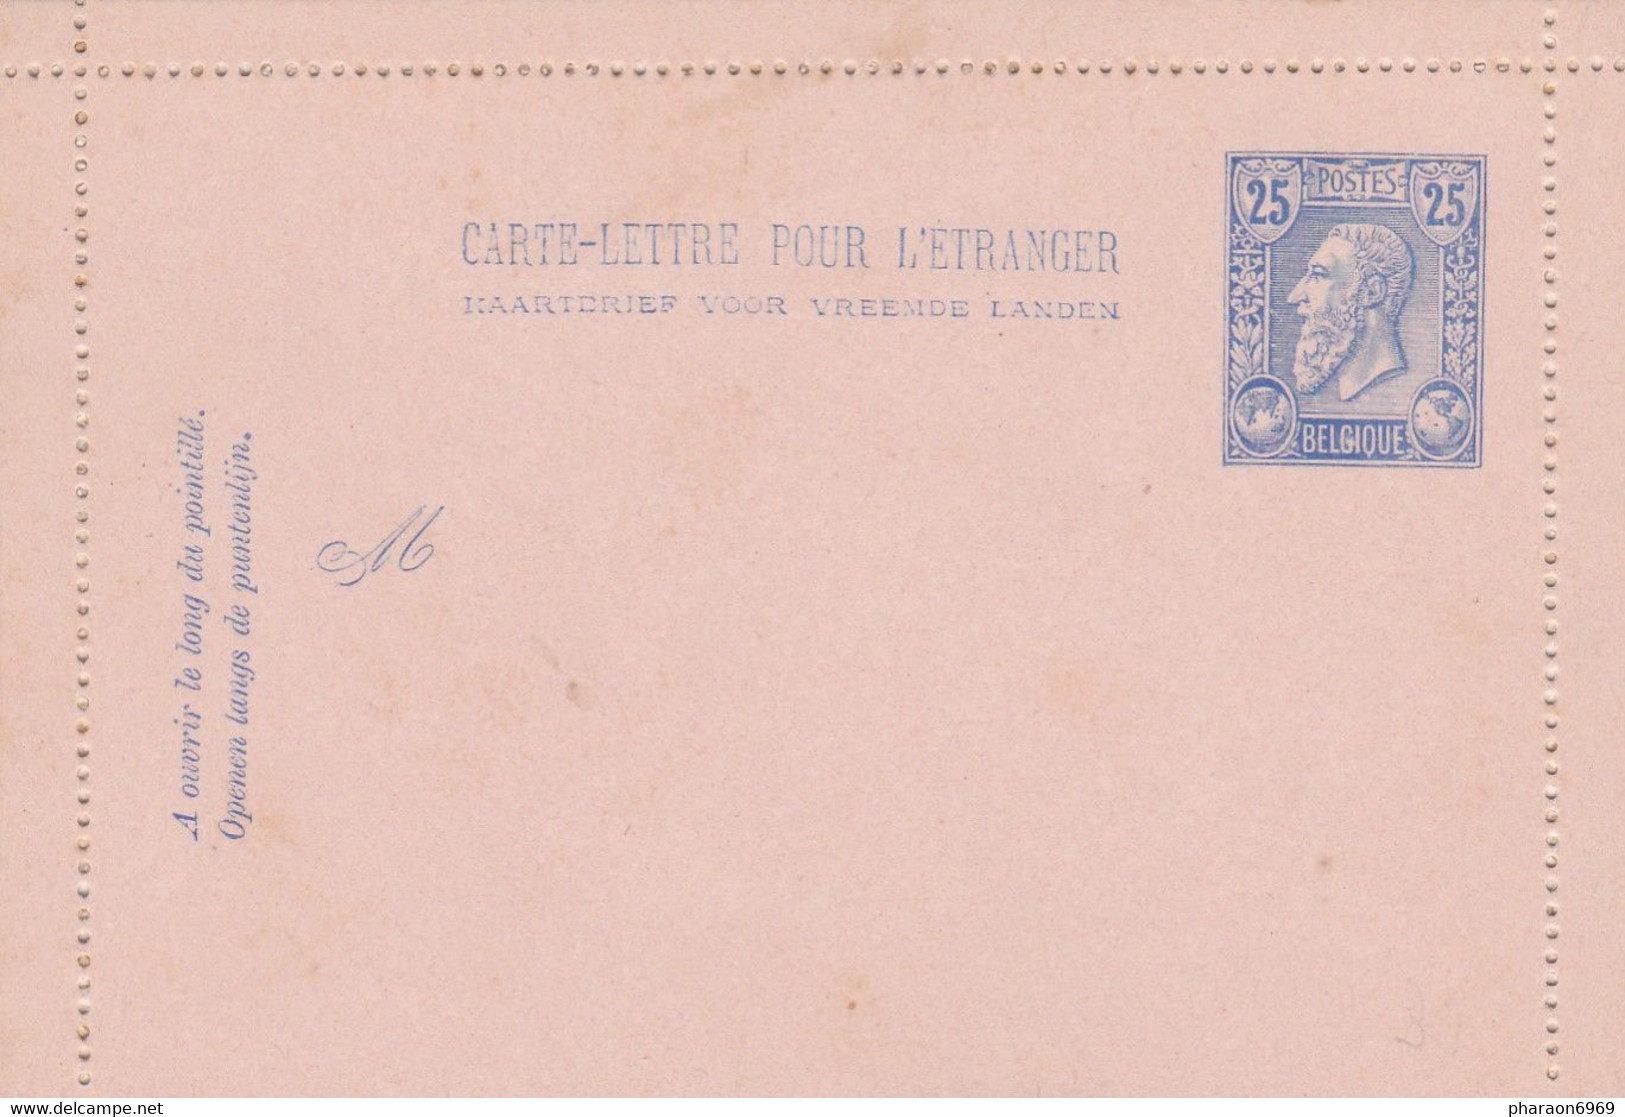 2 Scans Carte Lettre Entier Postal Leopold II De Profil - Cartes-lettres